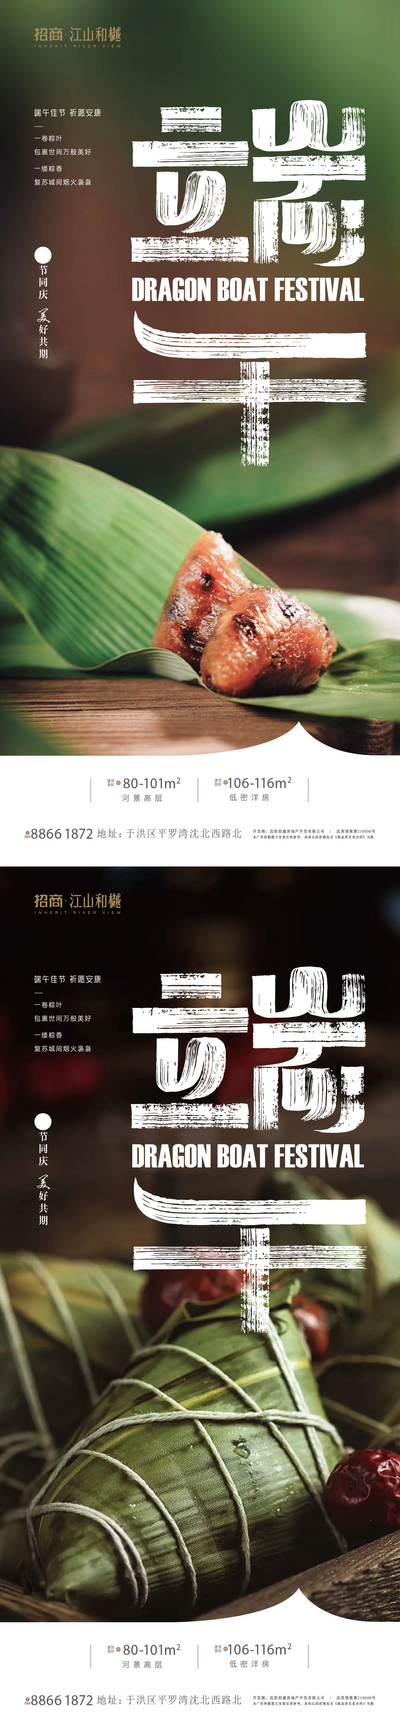 南门网 广告 地产 节气 端午 粽子 粽 龙舟 互联网 微信 水 24节气 画面 KV 粽山 系列